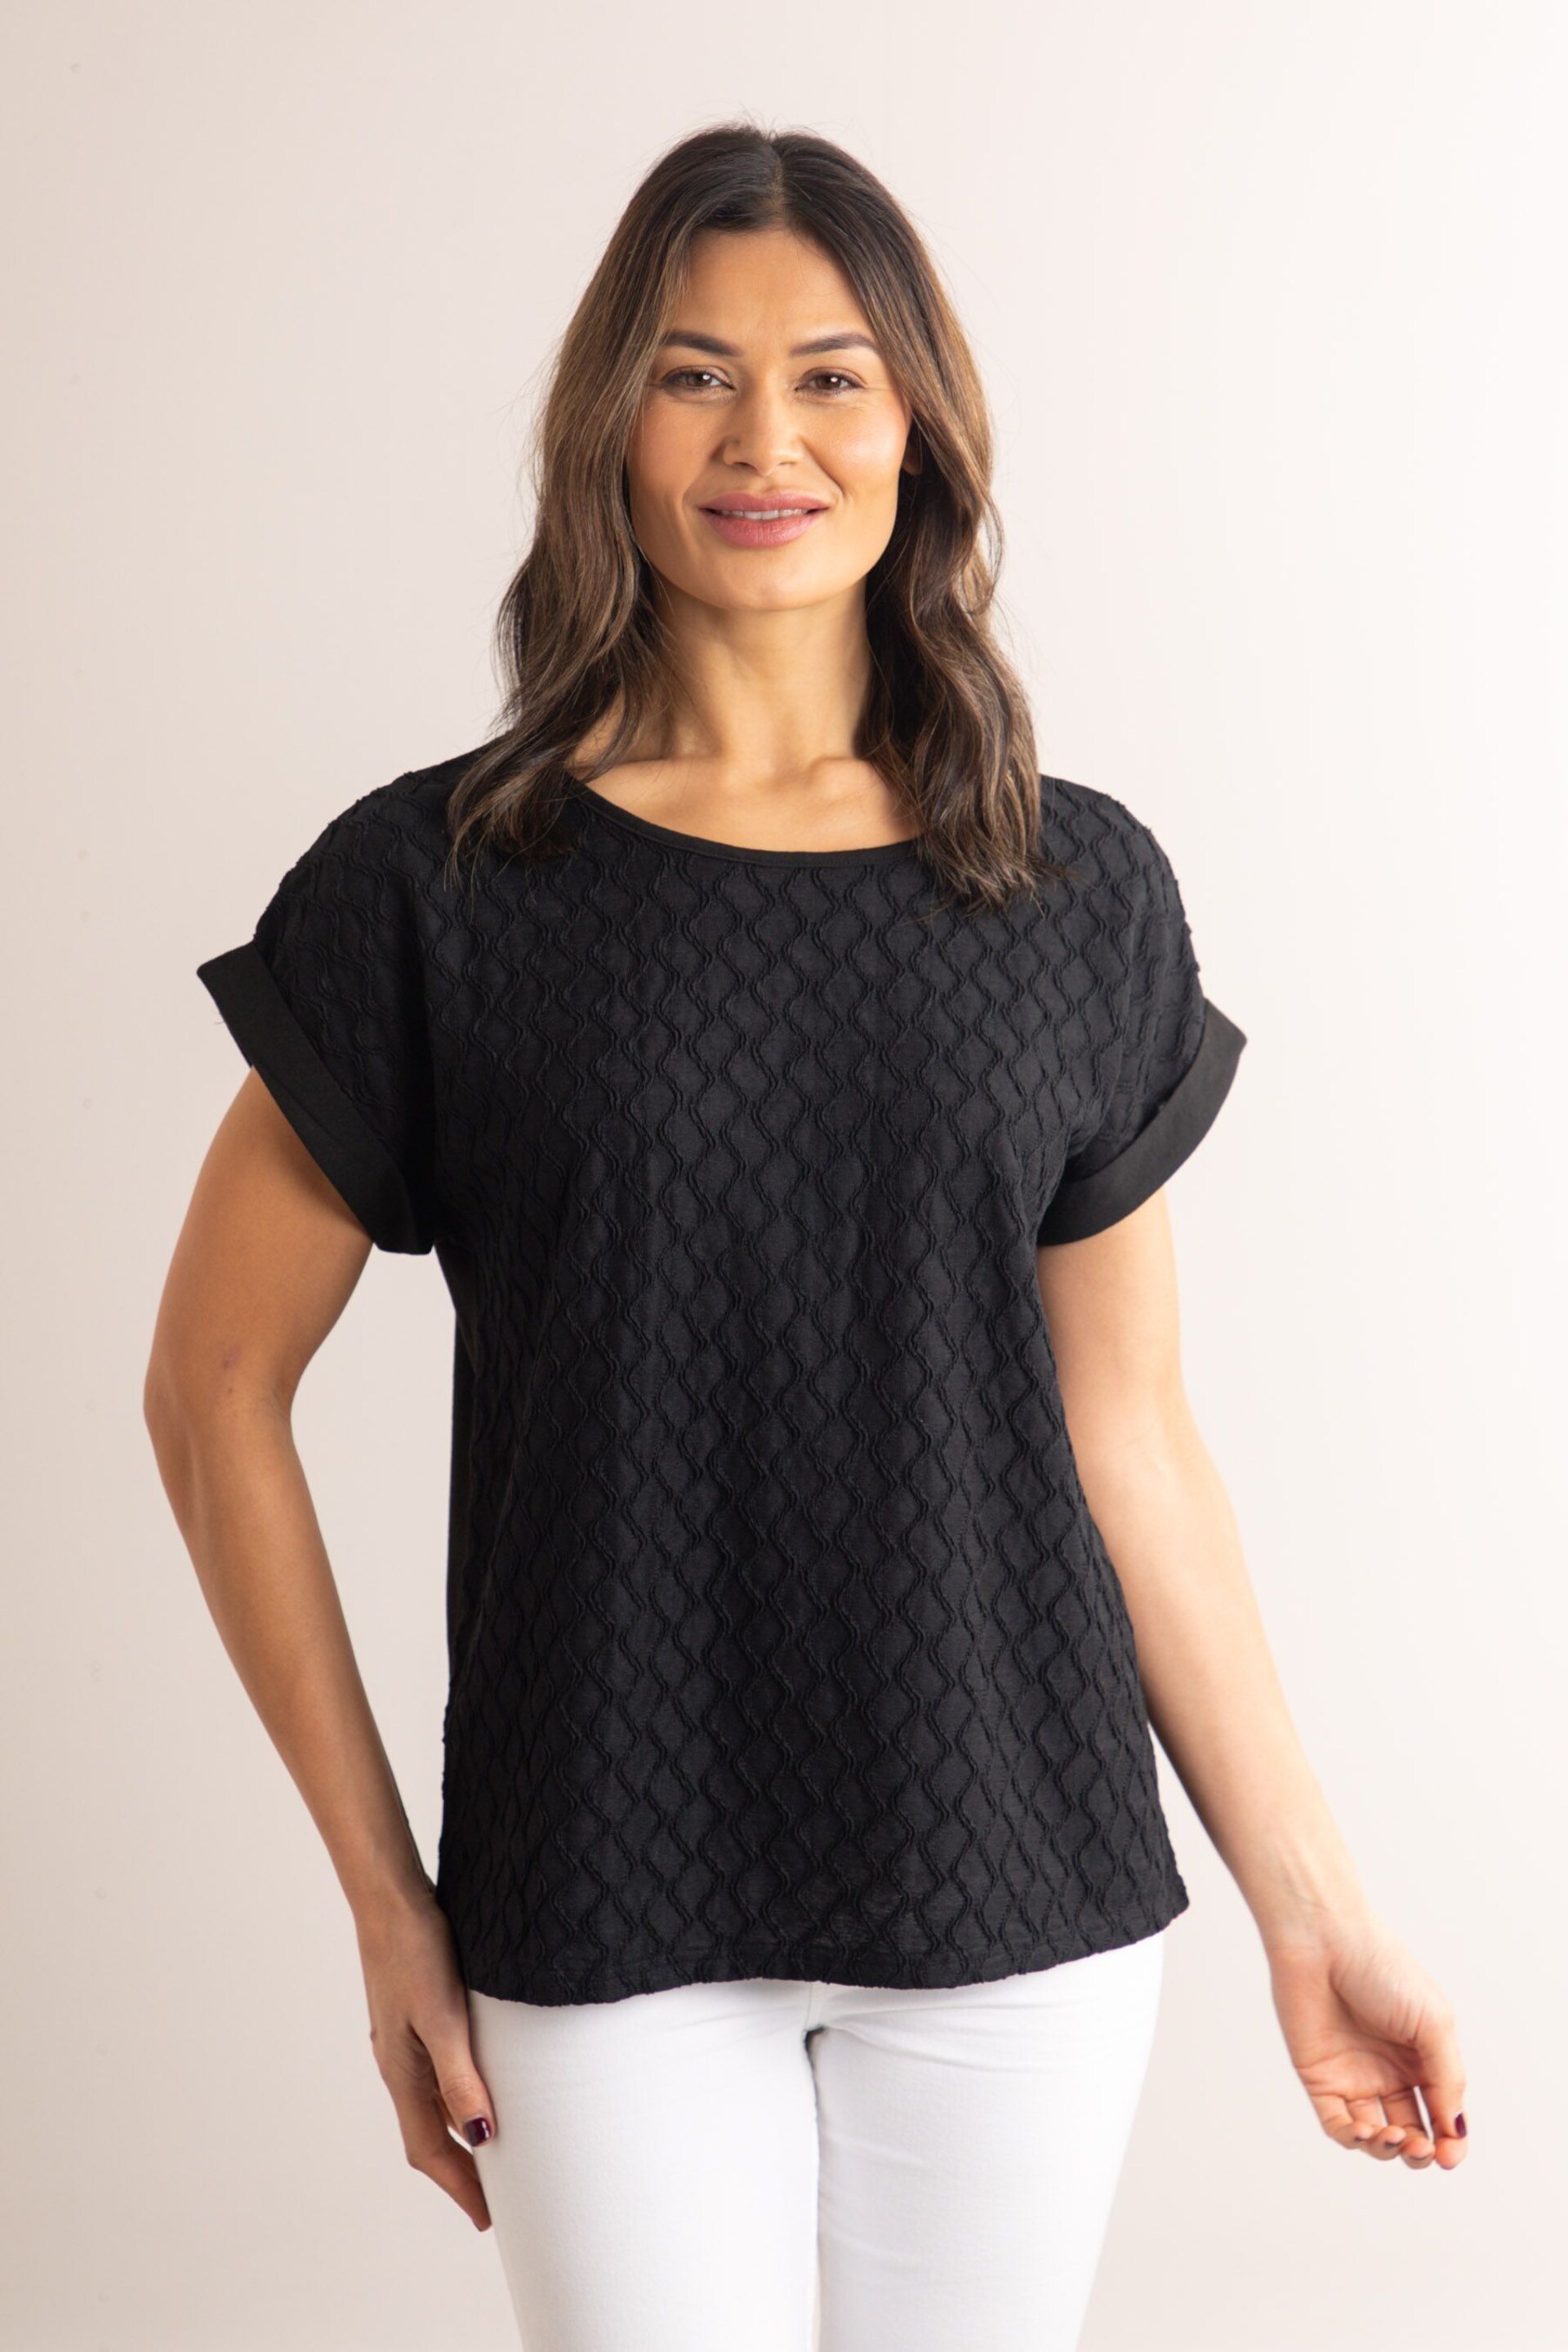 Lakeland Clothing Reay Textured Short Sleeve Black Blouse - Image 1 of 4